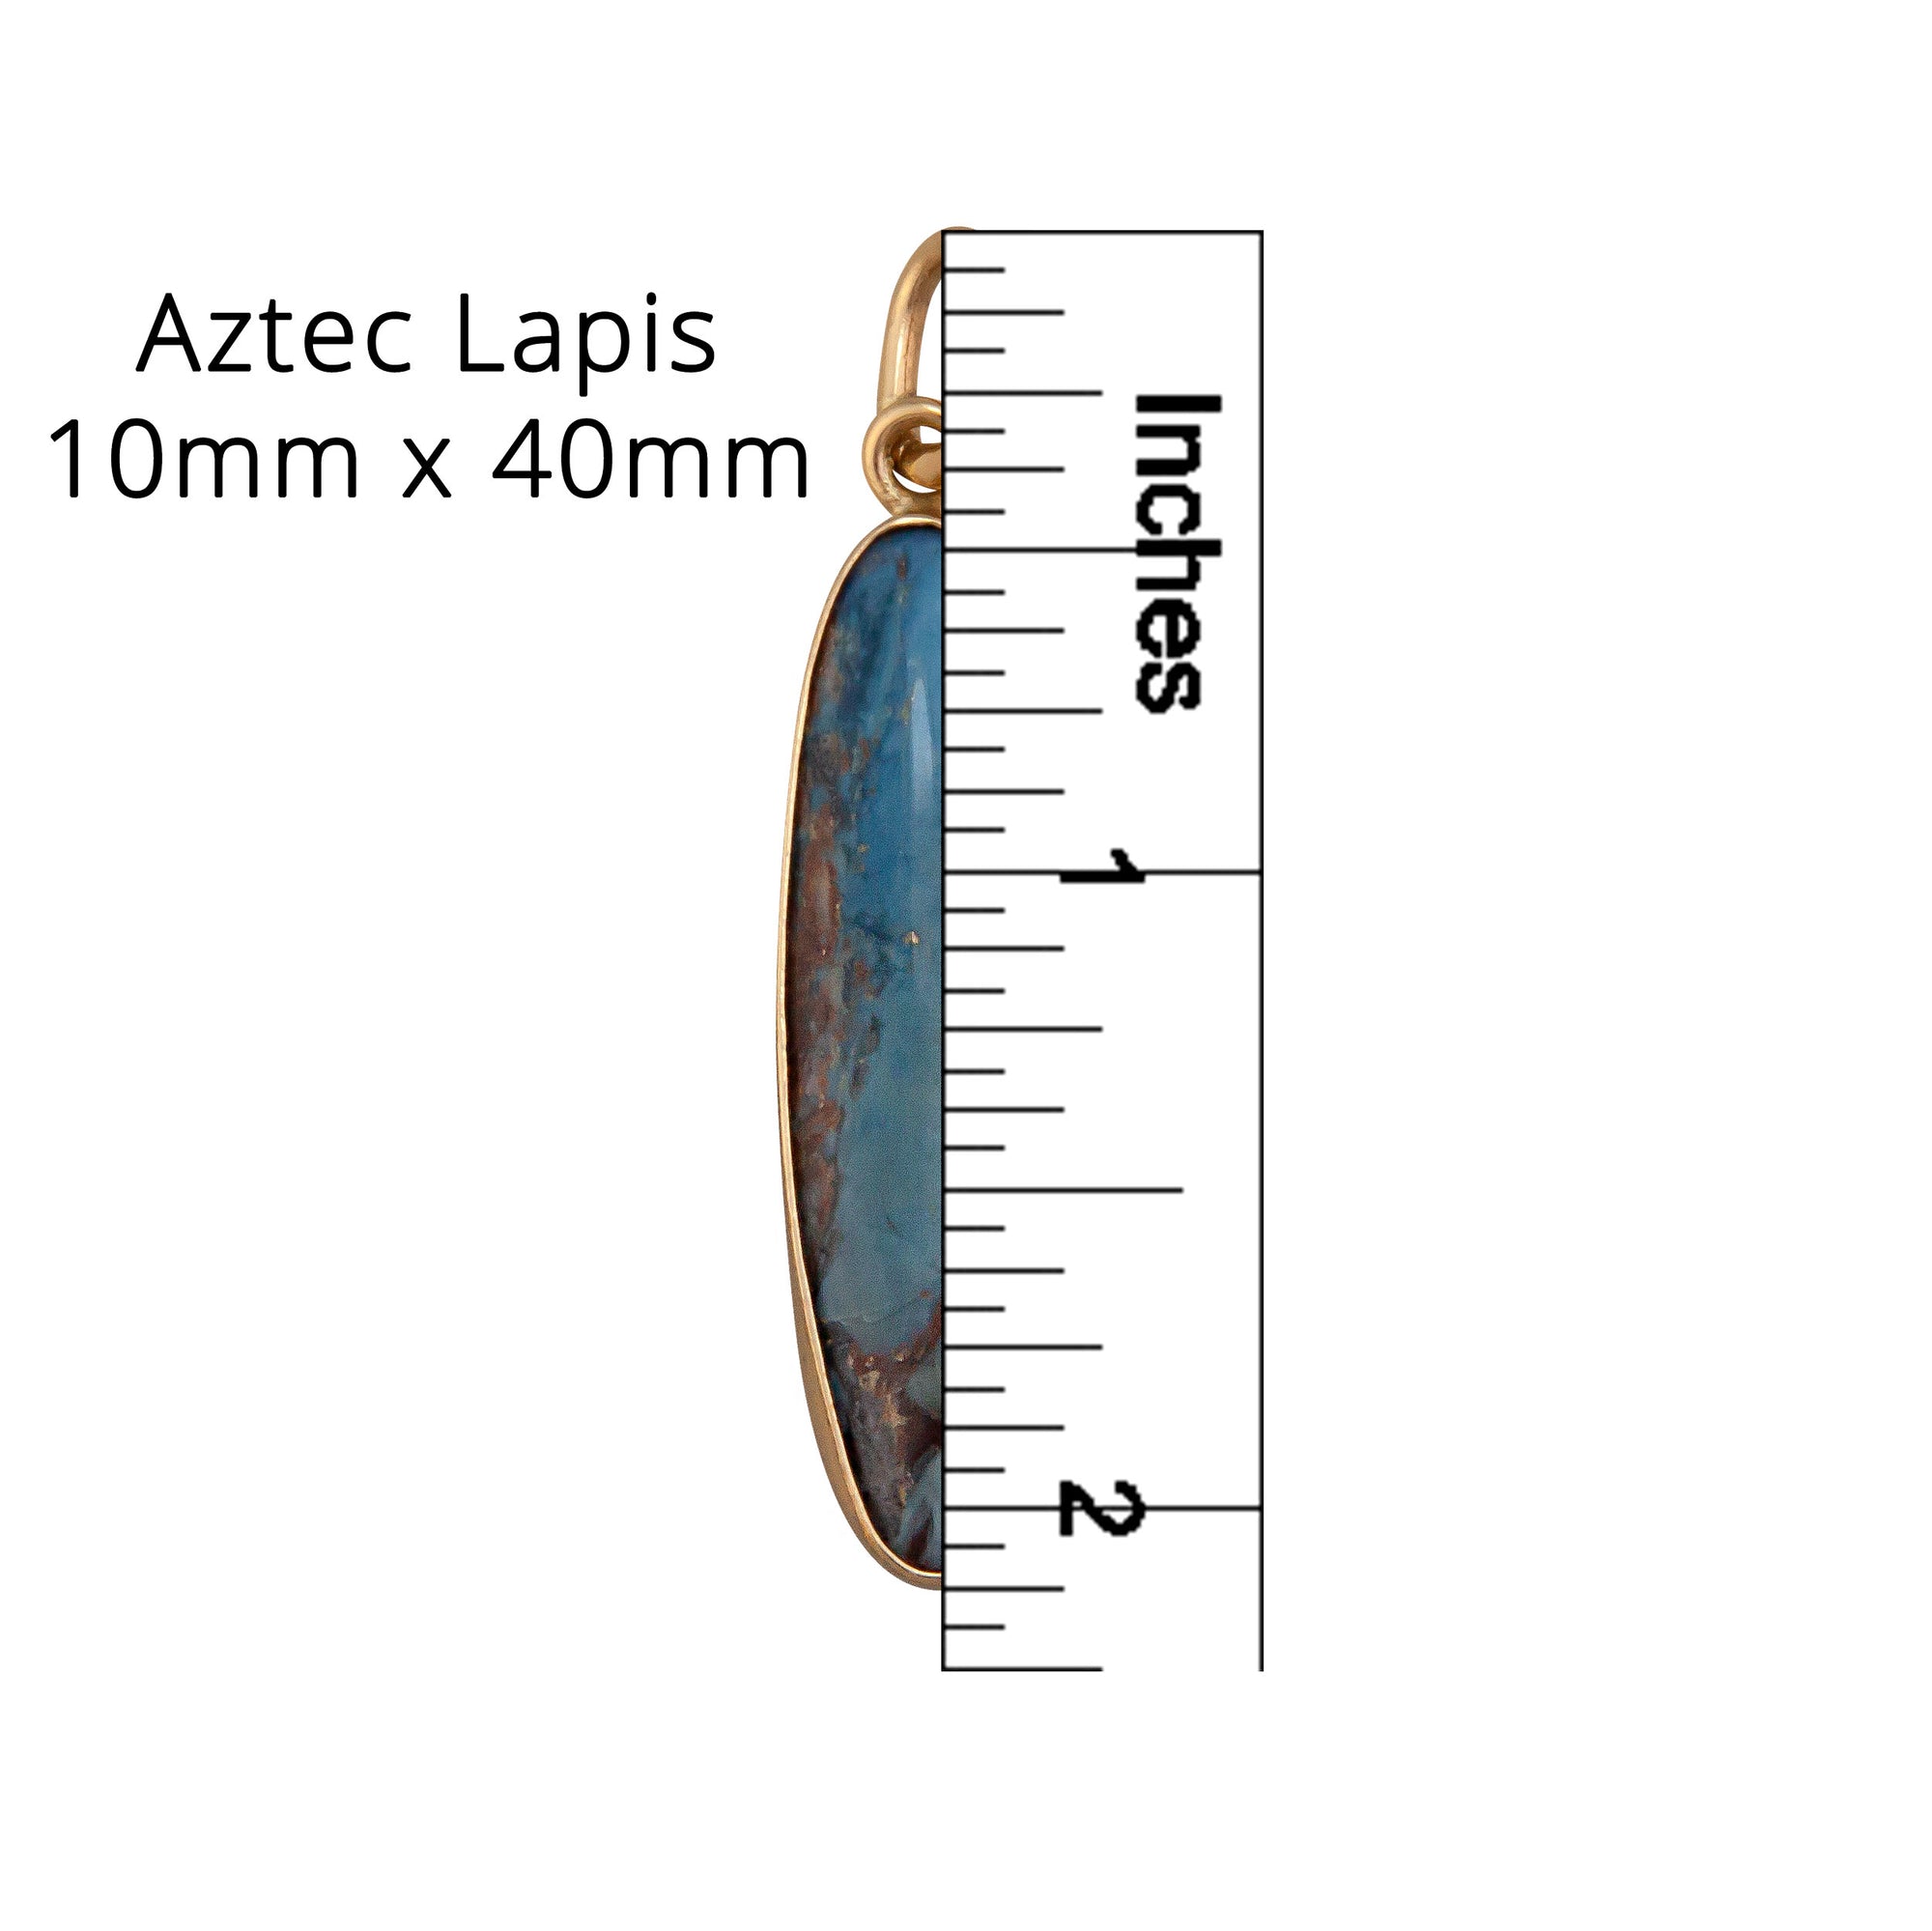 Charles Albert Jewelry - Alchemia Aztec Lapis Charm Pendant - Measurements